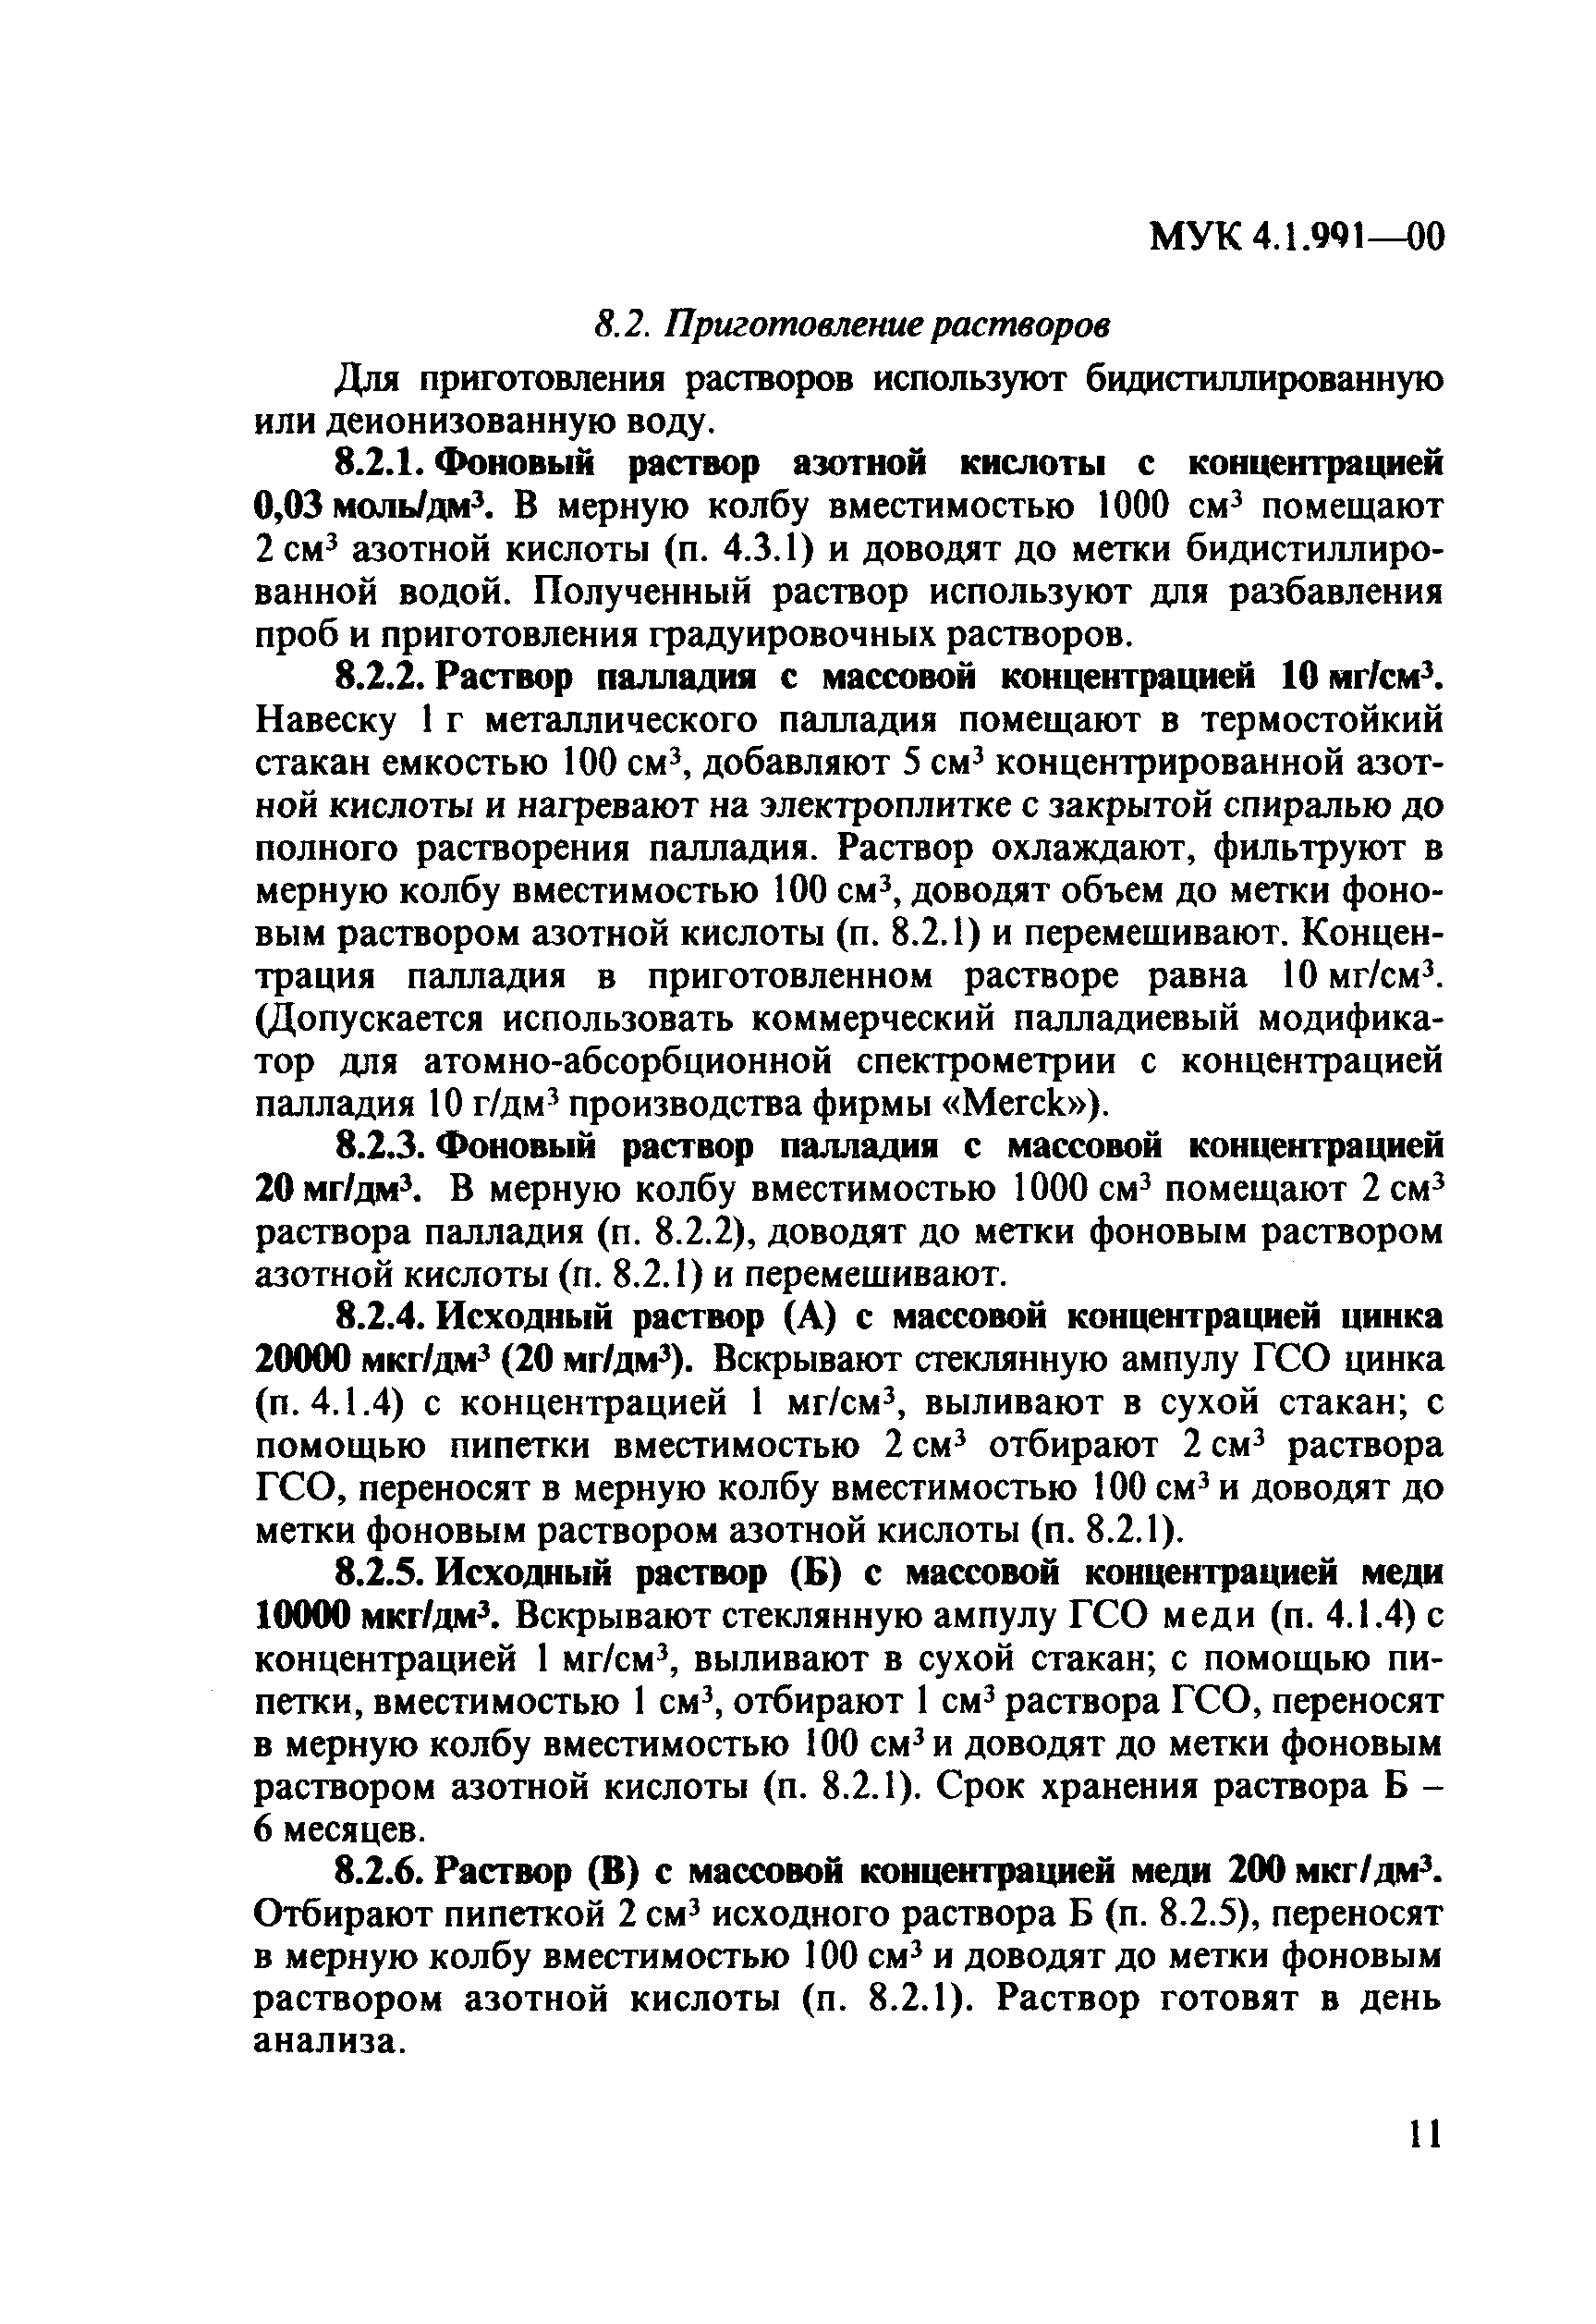 МУК 4.1.991-00